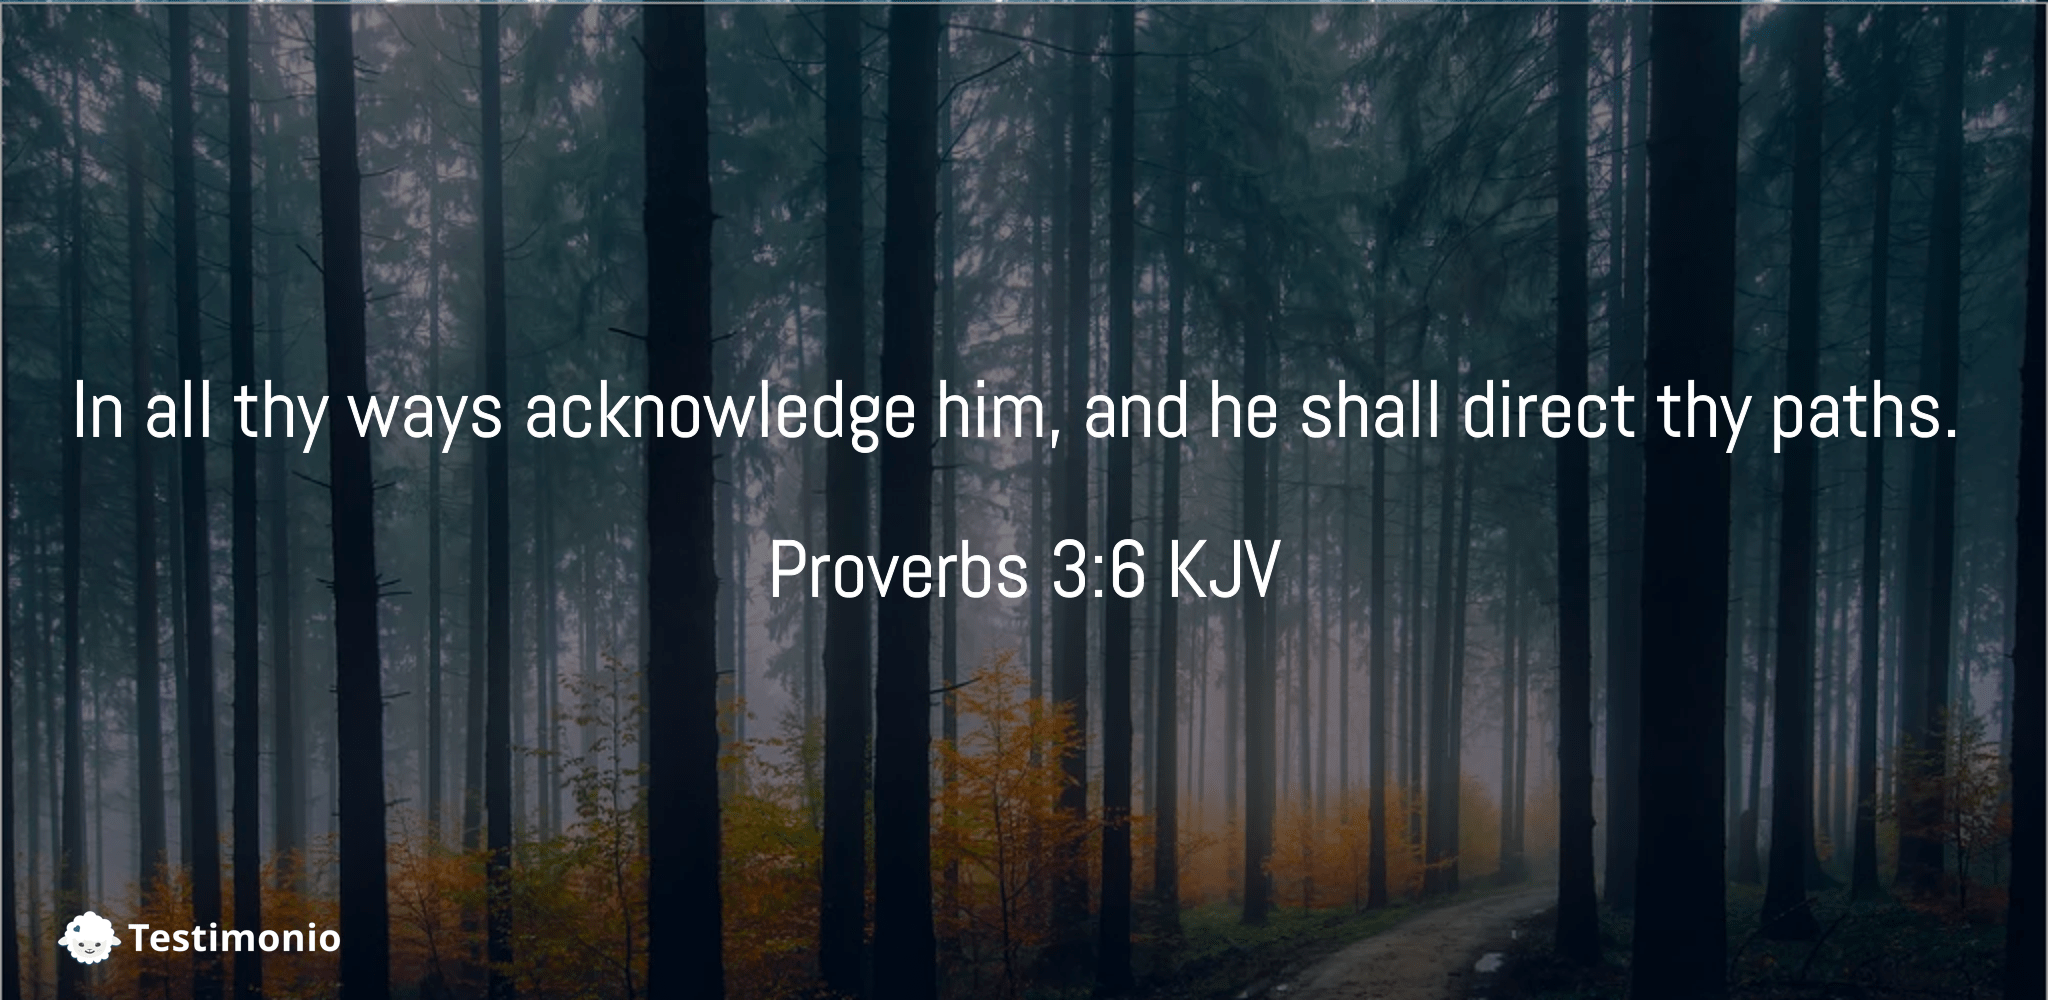 proverbs-3-6